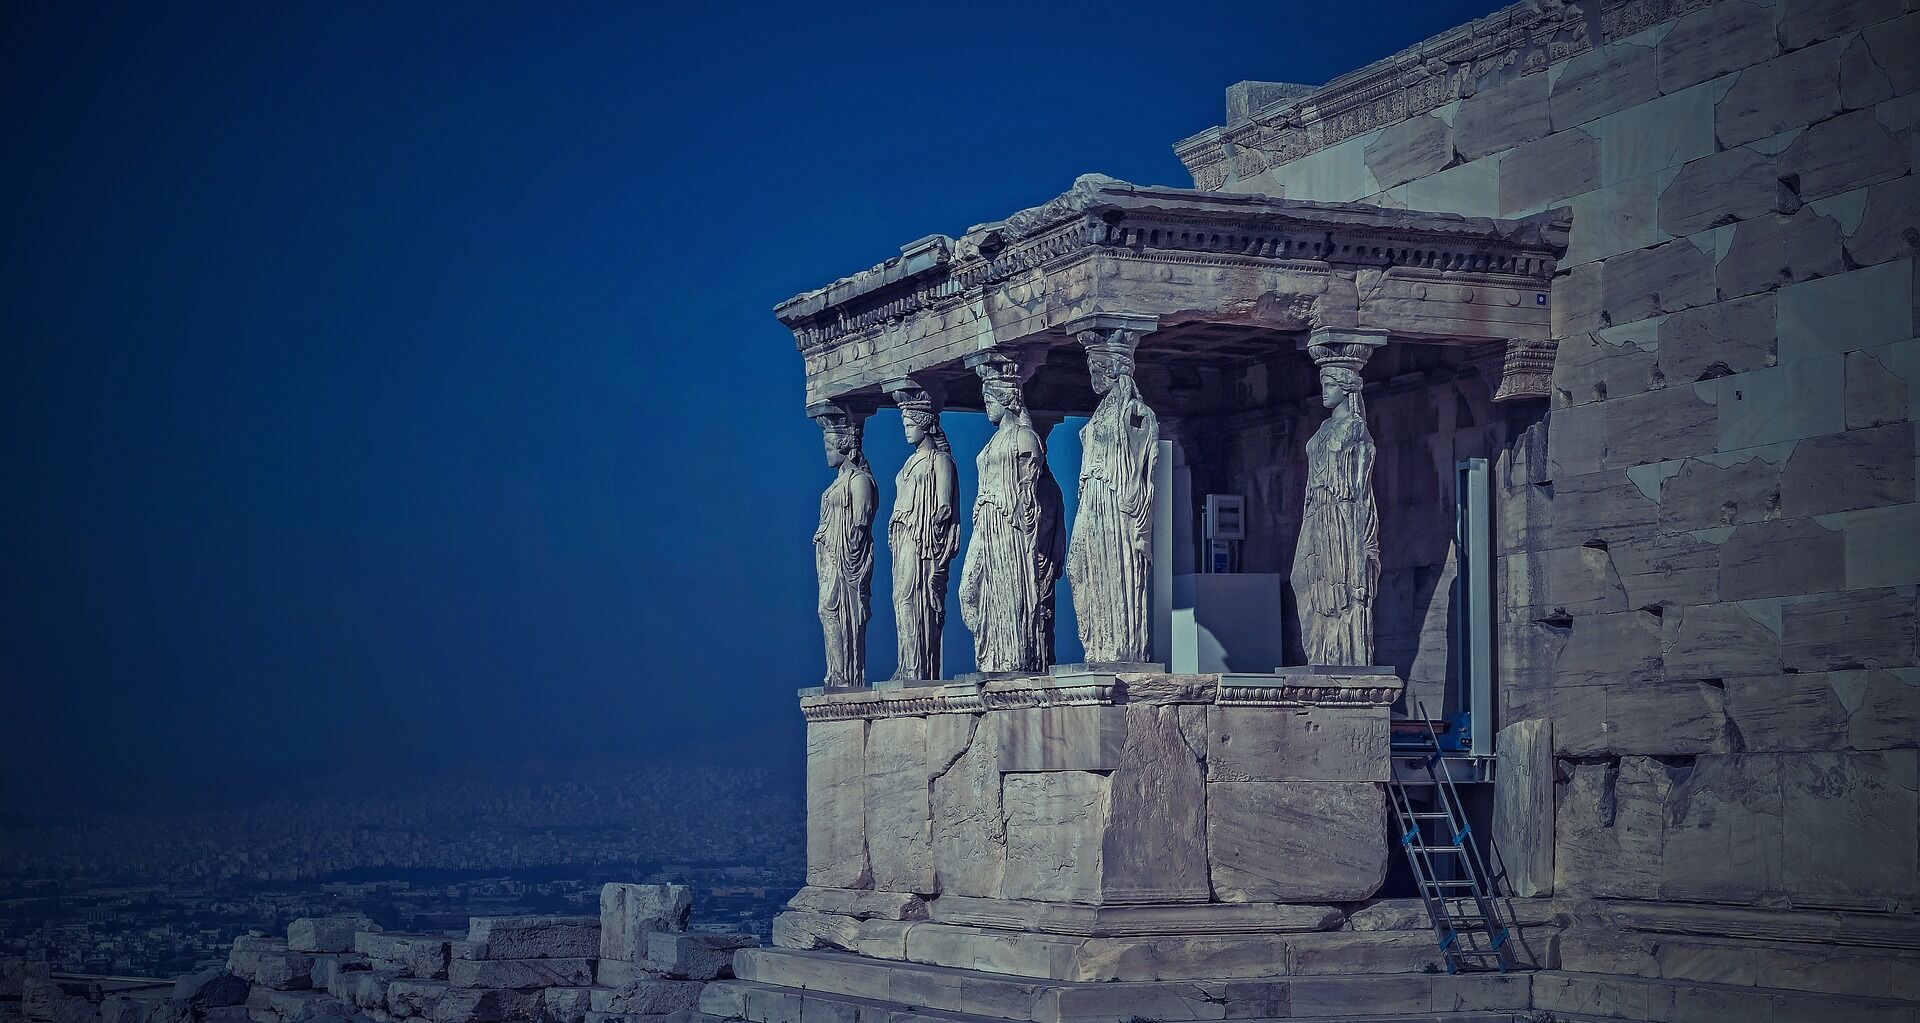 Акрополь в Афінах: що знаходиться на території найвідомішого архітектурного комплексу у світі